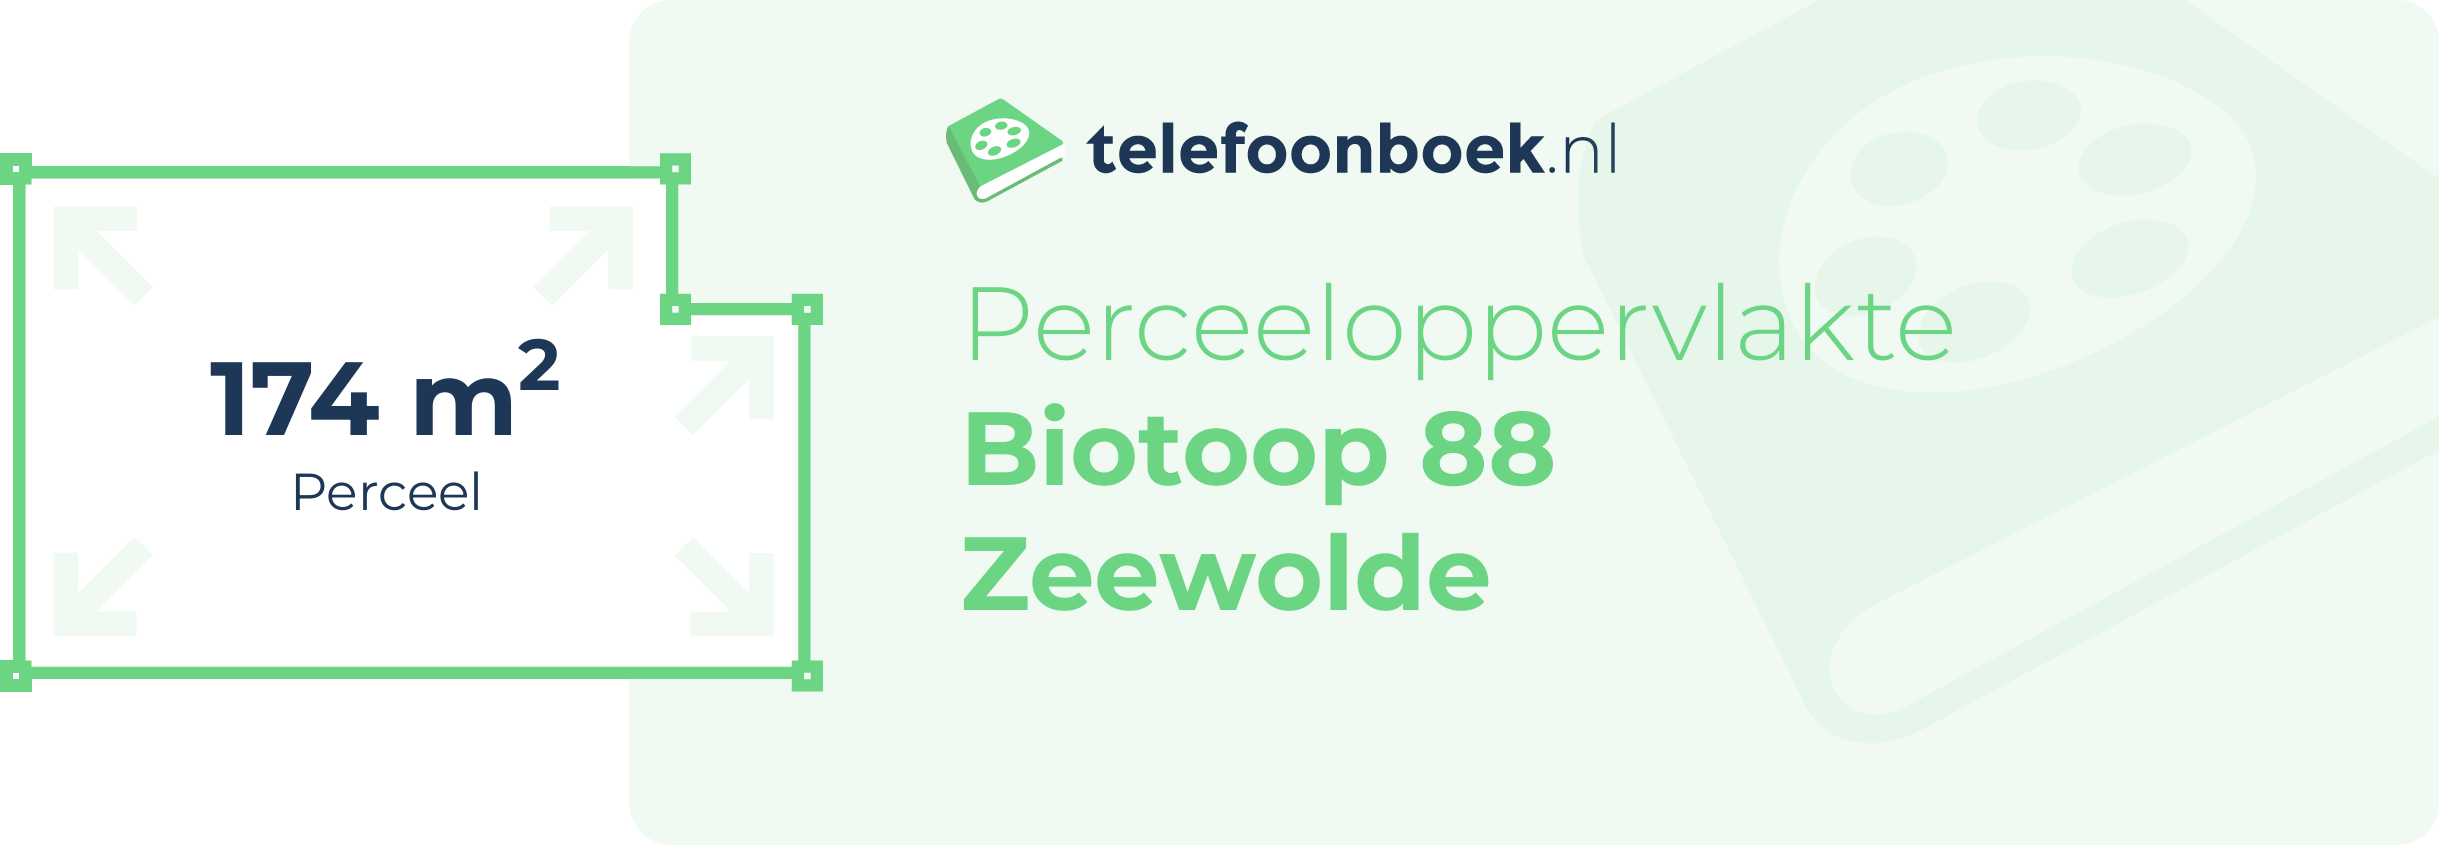 Perceeloppervlakte Biotoop 88 Zeewolde